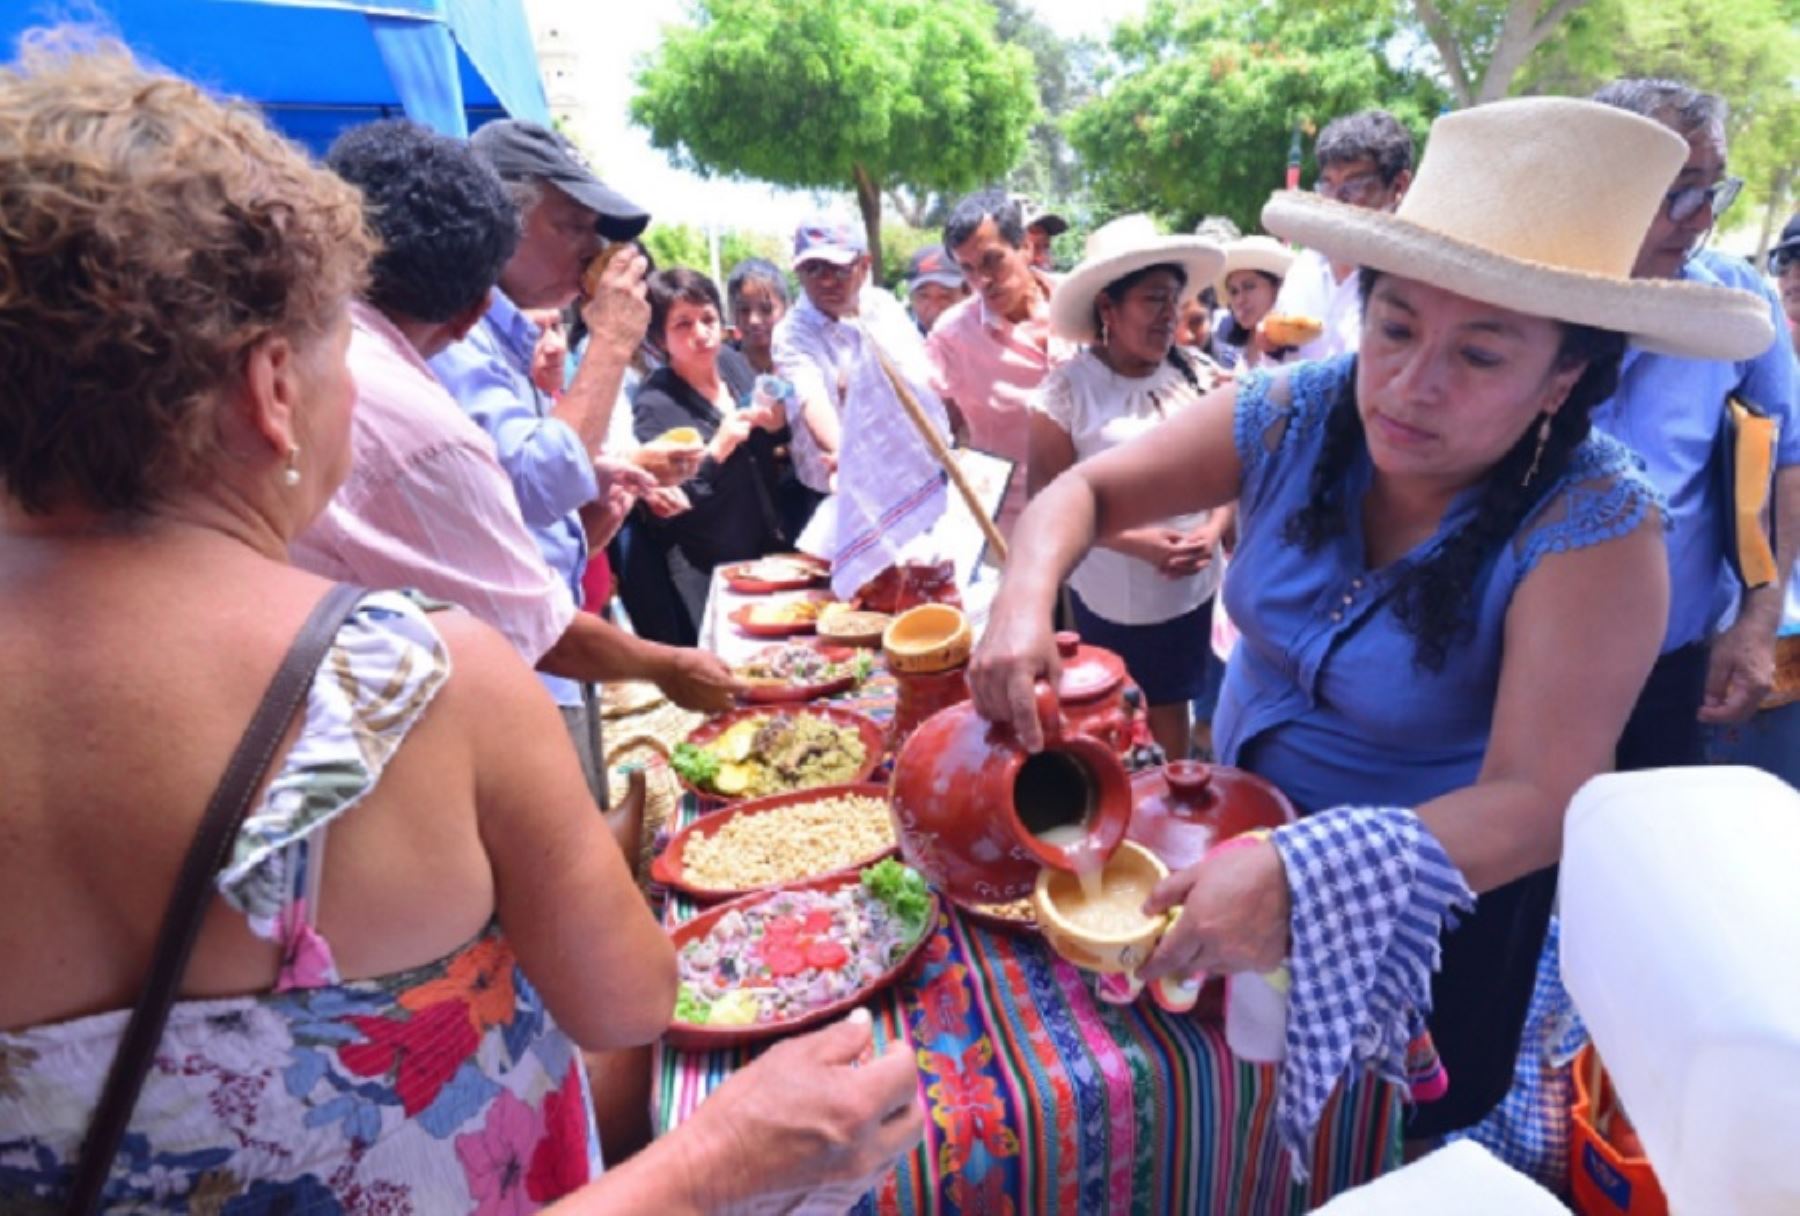 La Municipalidad Provincial de Piura, a través de su Gerencia de Desarrollo Económico Local y la División de Turismo, llevará a cabo este viernes 25 de agosto el “Festival de la Picantería Piurana" en el emblemático Centro Cívico, conocido como la Plaza de la Paloma de la Paz.